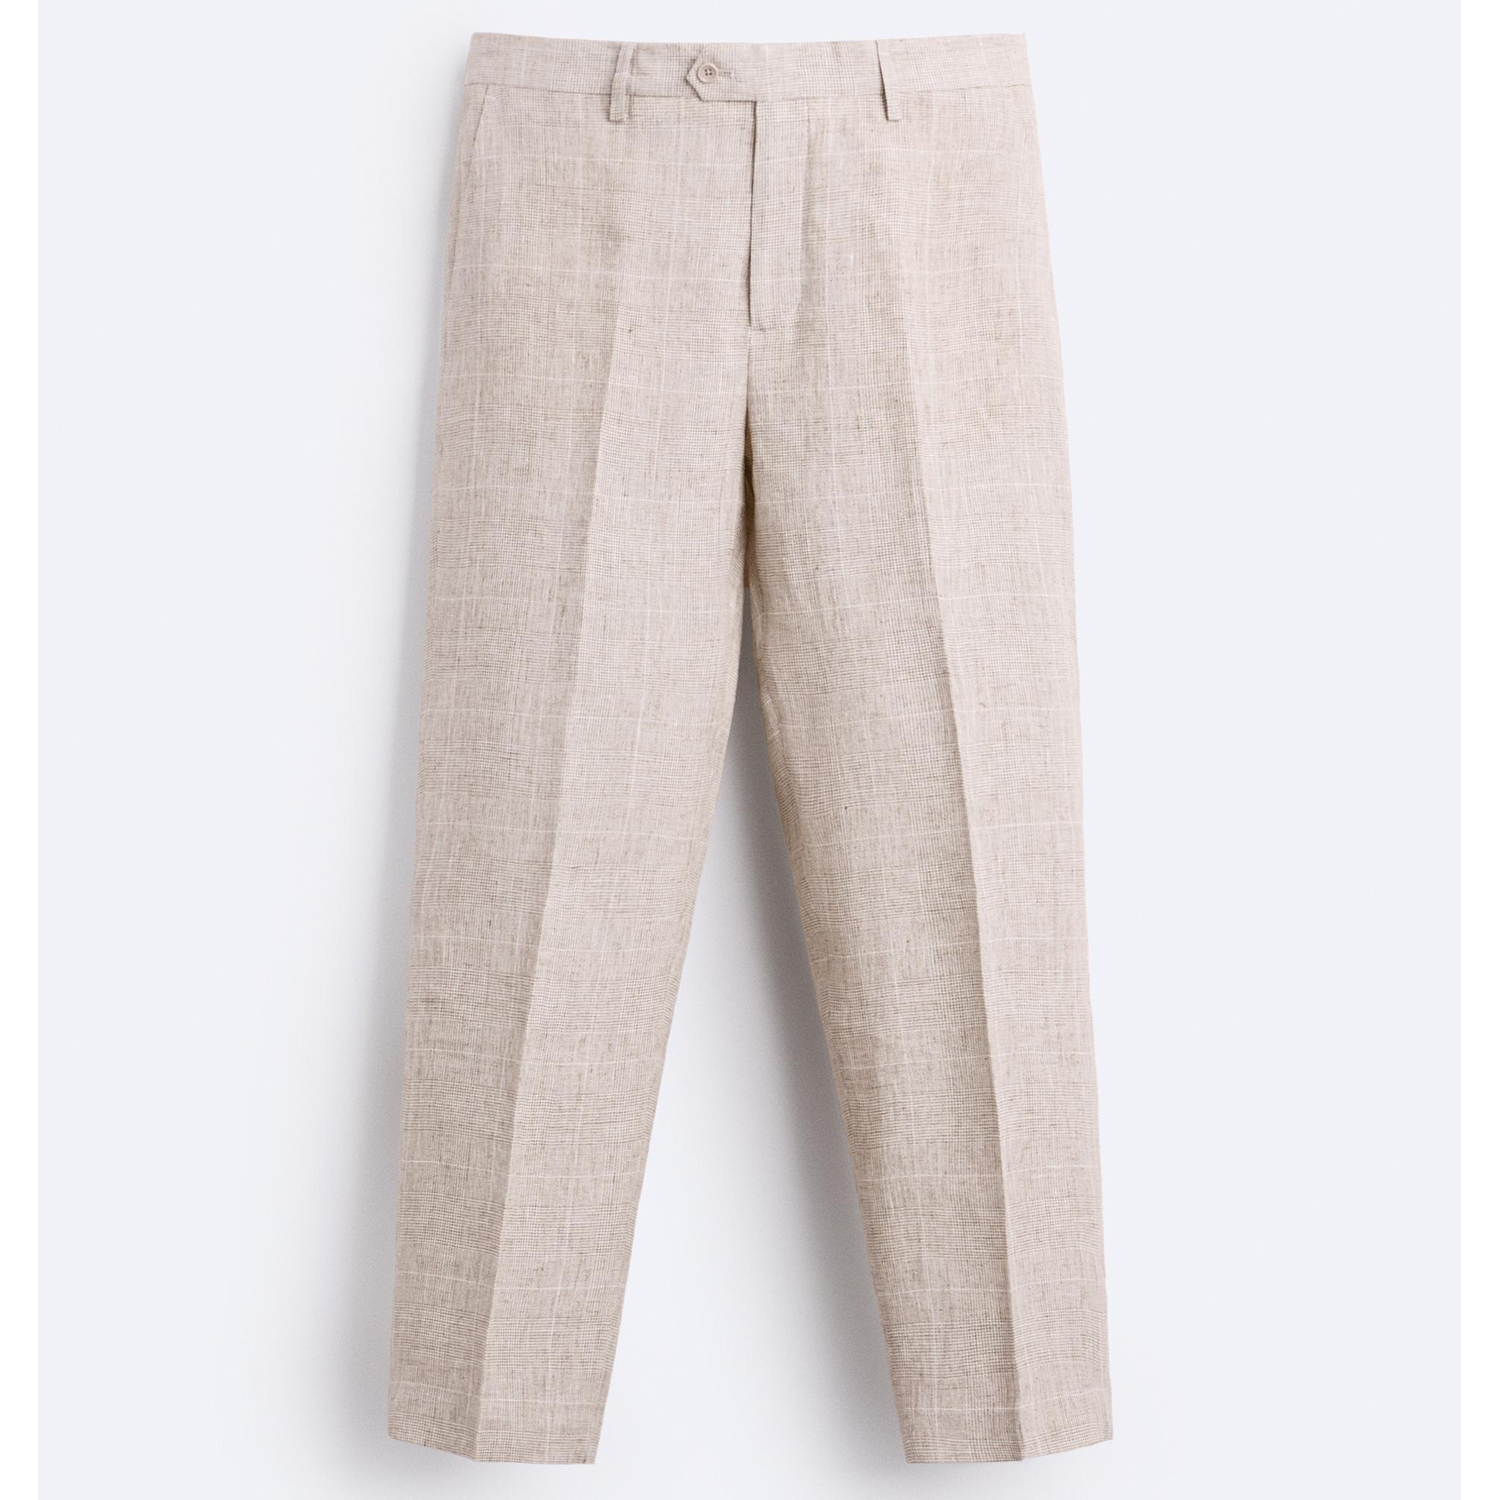 Брюки Zara 100% Linen Check Suit, светло-бежевый брюки tu классического кроя 42 44 размер новые